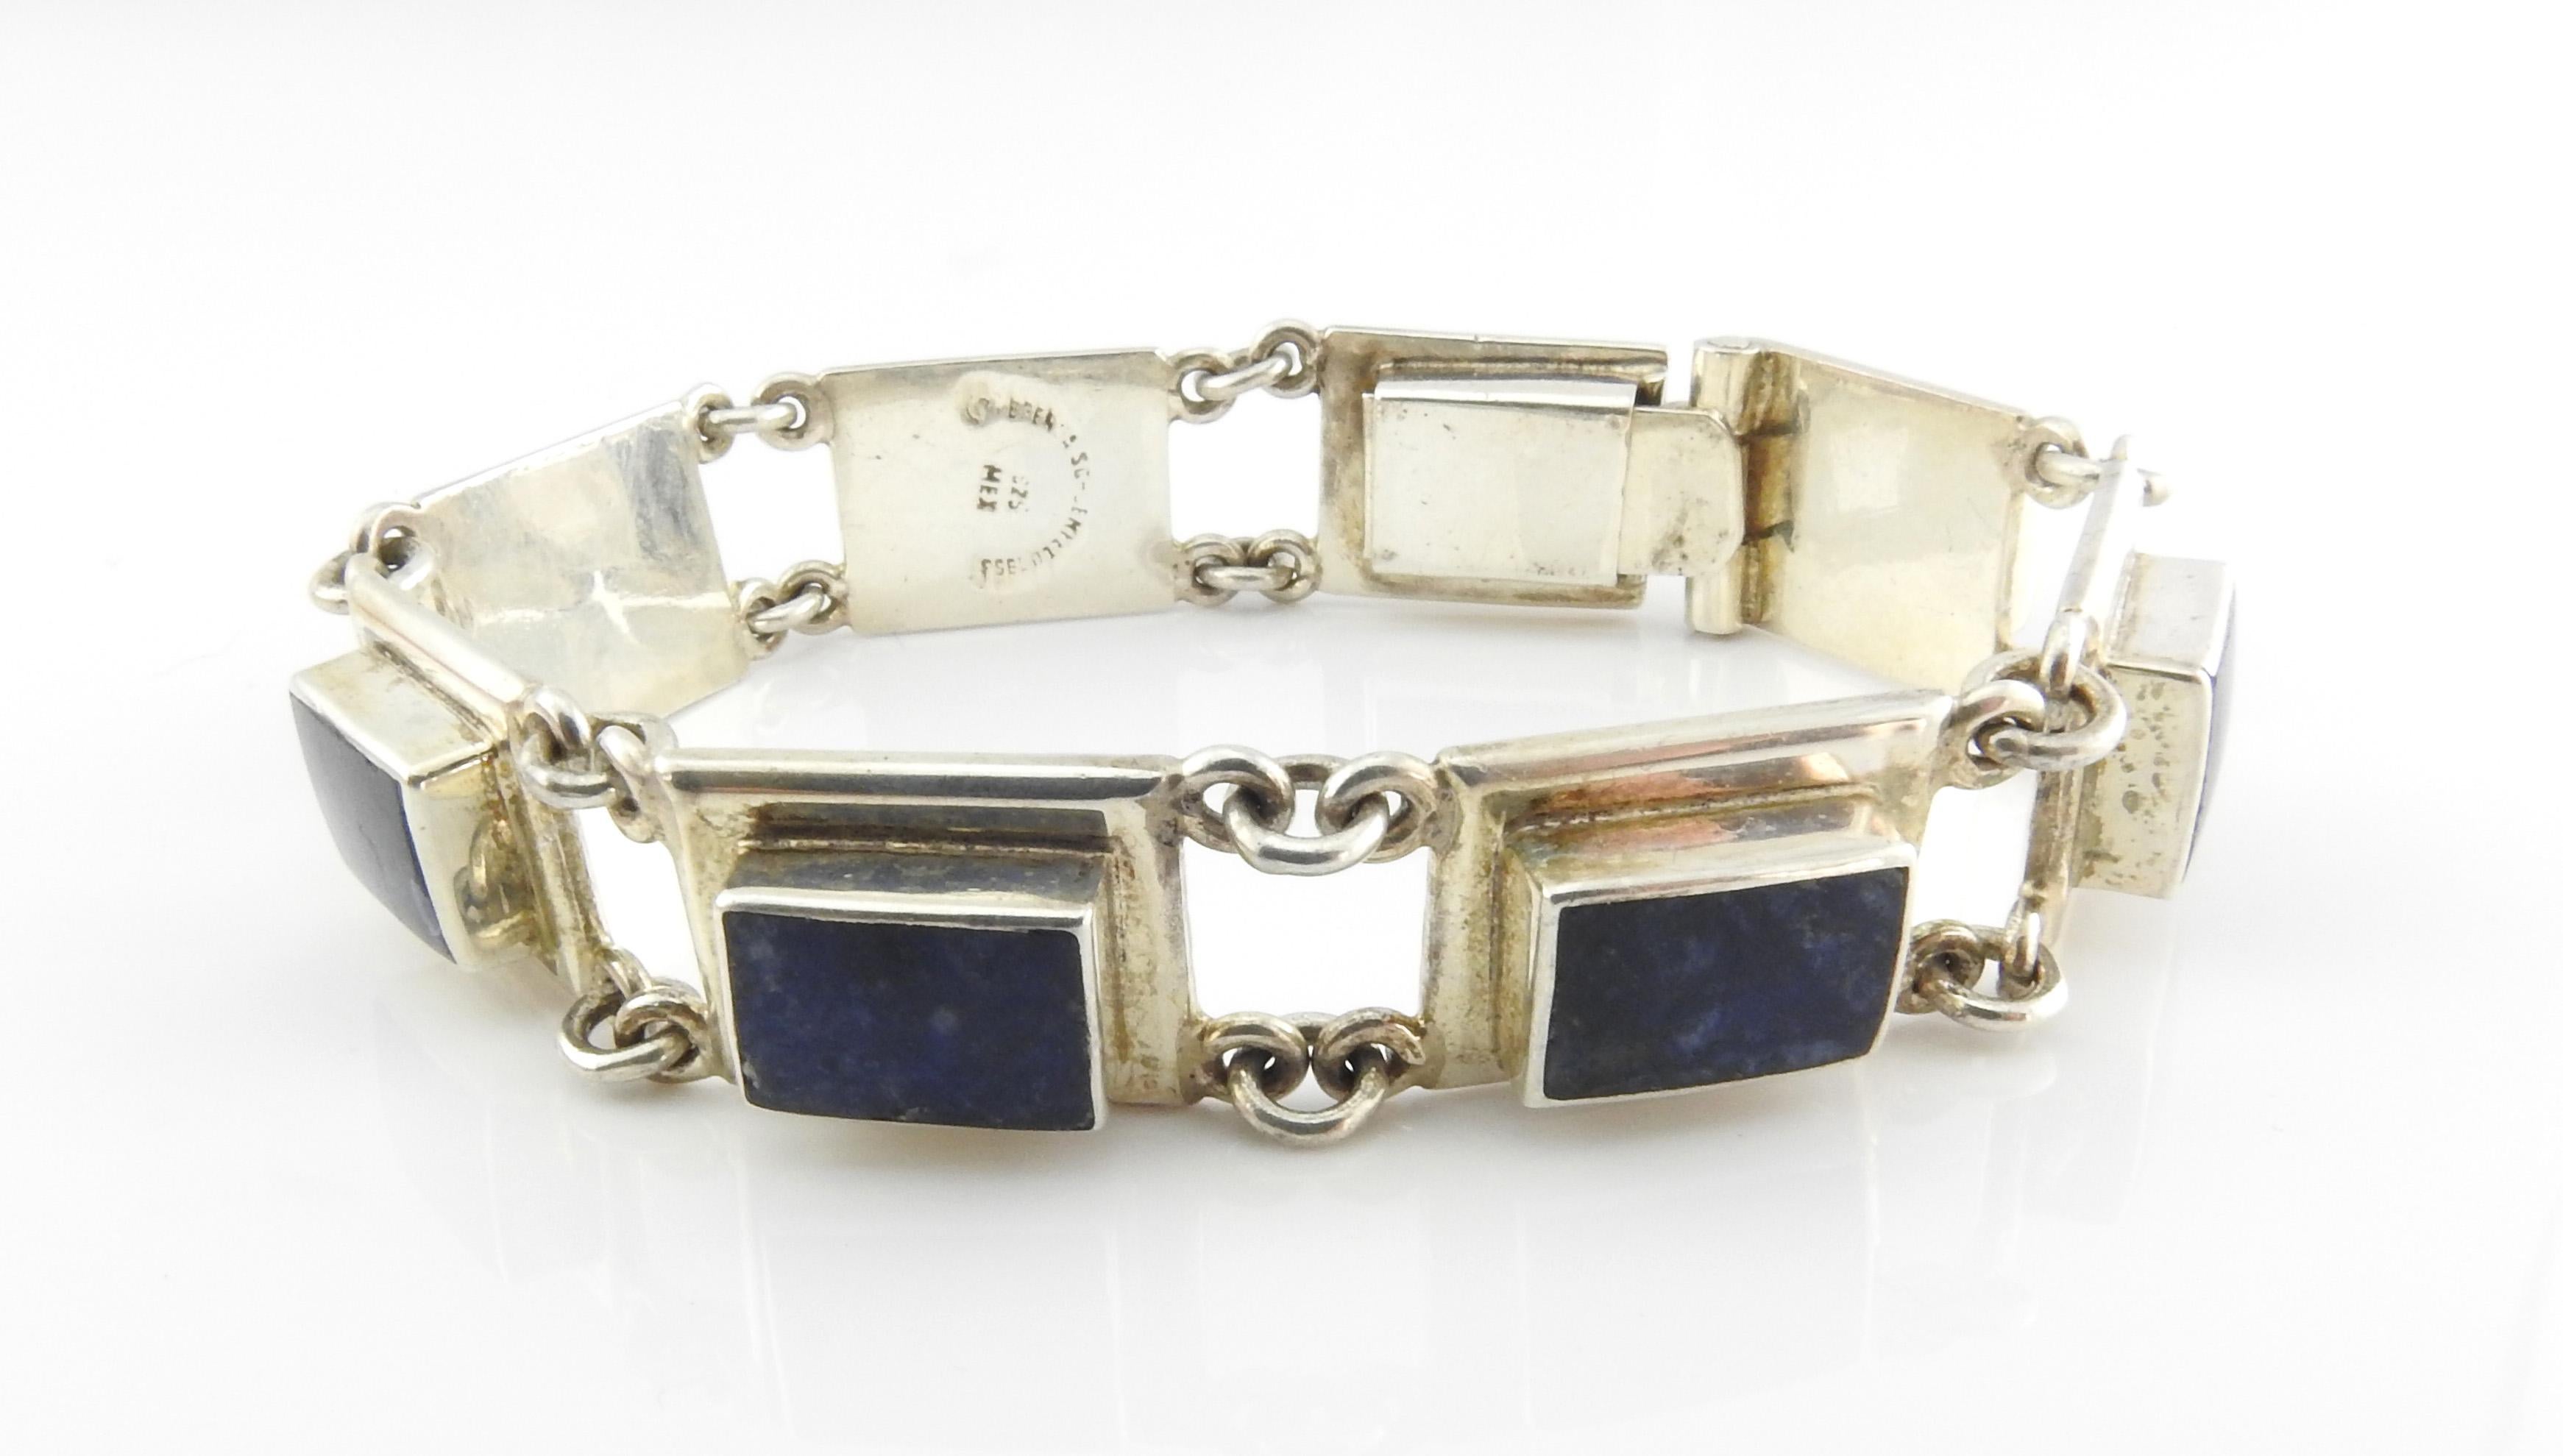 Brenda Schoenfeld Mexico Sterling silver lapis lazuli panel link bracelet.

Marked: BRENDA SCHOENFELD 953,

925 MEX

Size 7 on bracelet cone.

Measures: 7 1/2